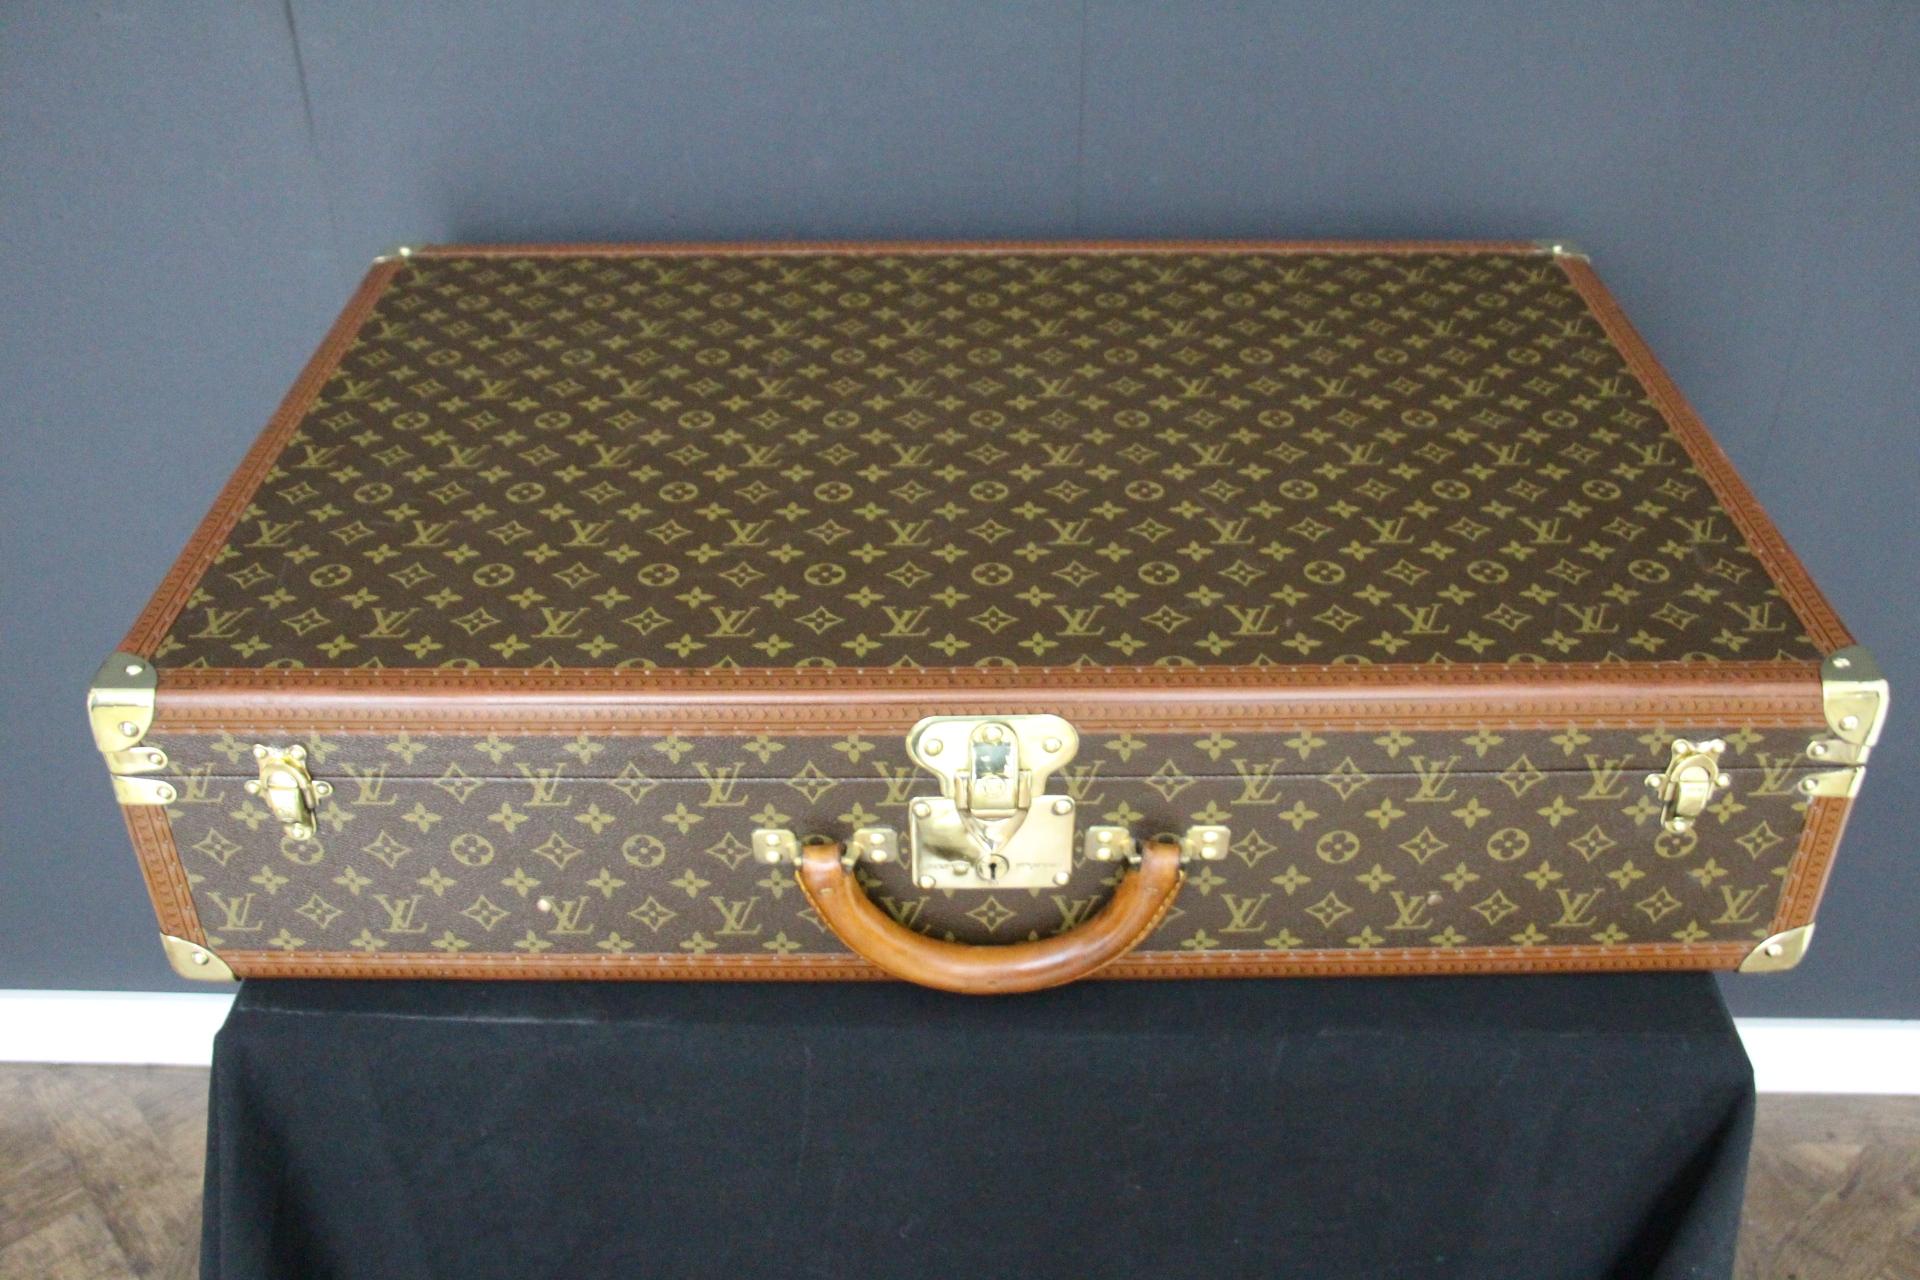  Louis Vuitton Suitcase 80 cm,  80 cm Louis Vuitton Trunk For Sale 11